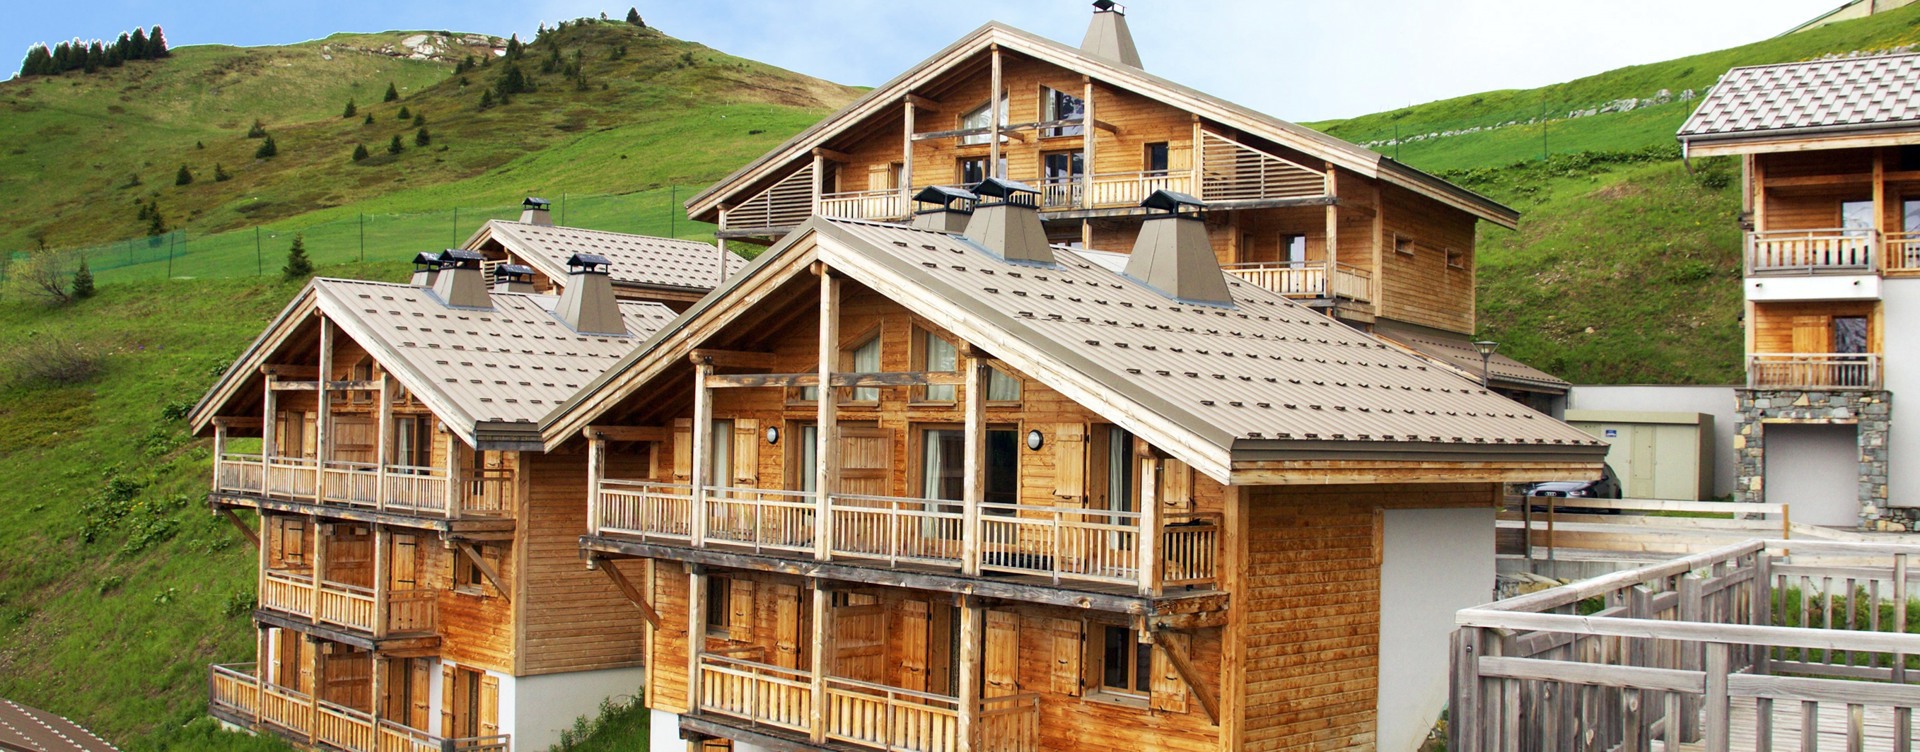 Ontdek ons sfeervolle resort in Flaine,
gelegen in de Franse Alpen